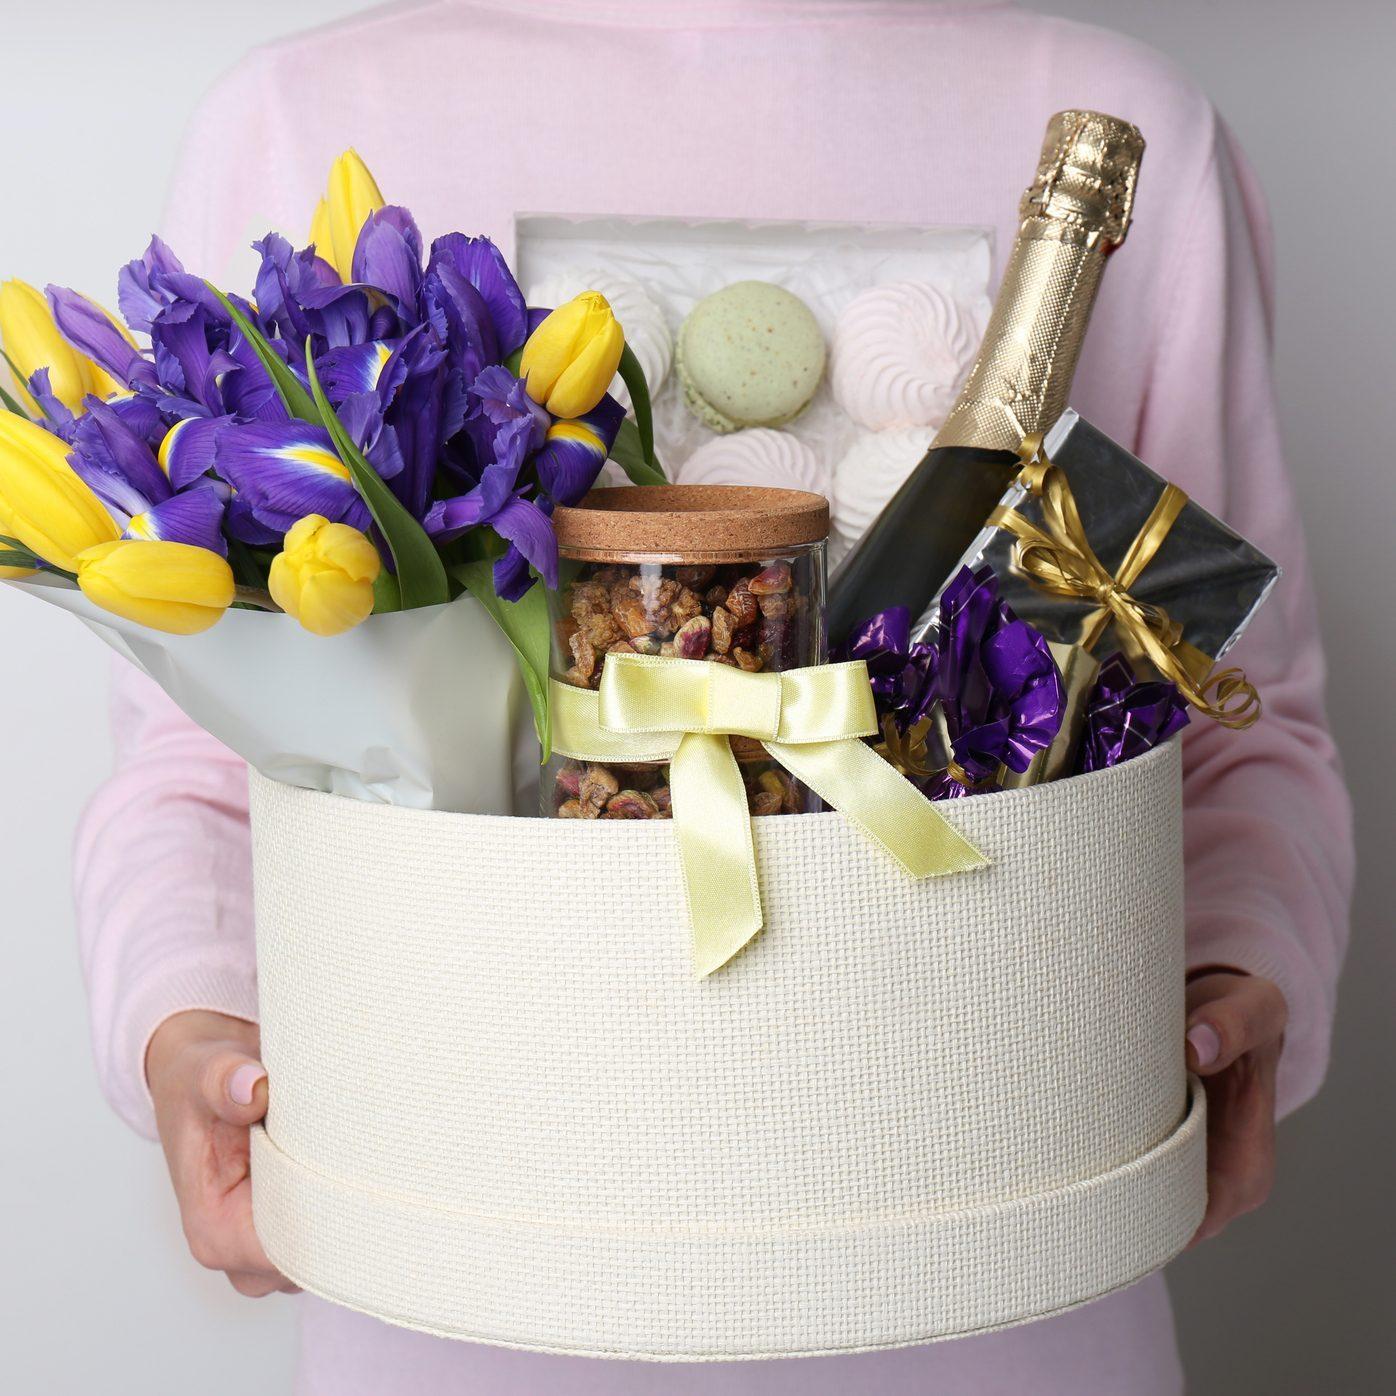 Adult gift basket  Creative easter baskets, Easter basket diy